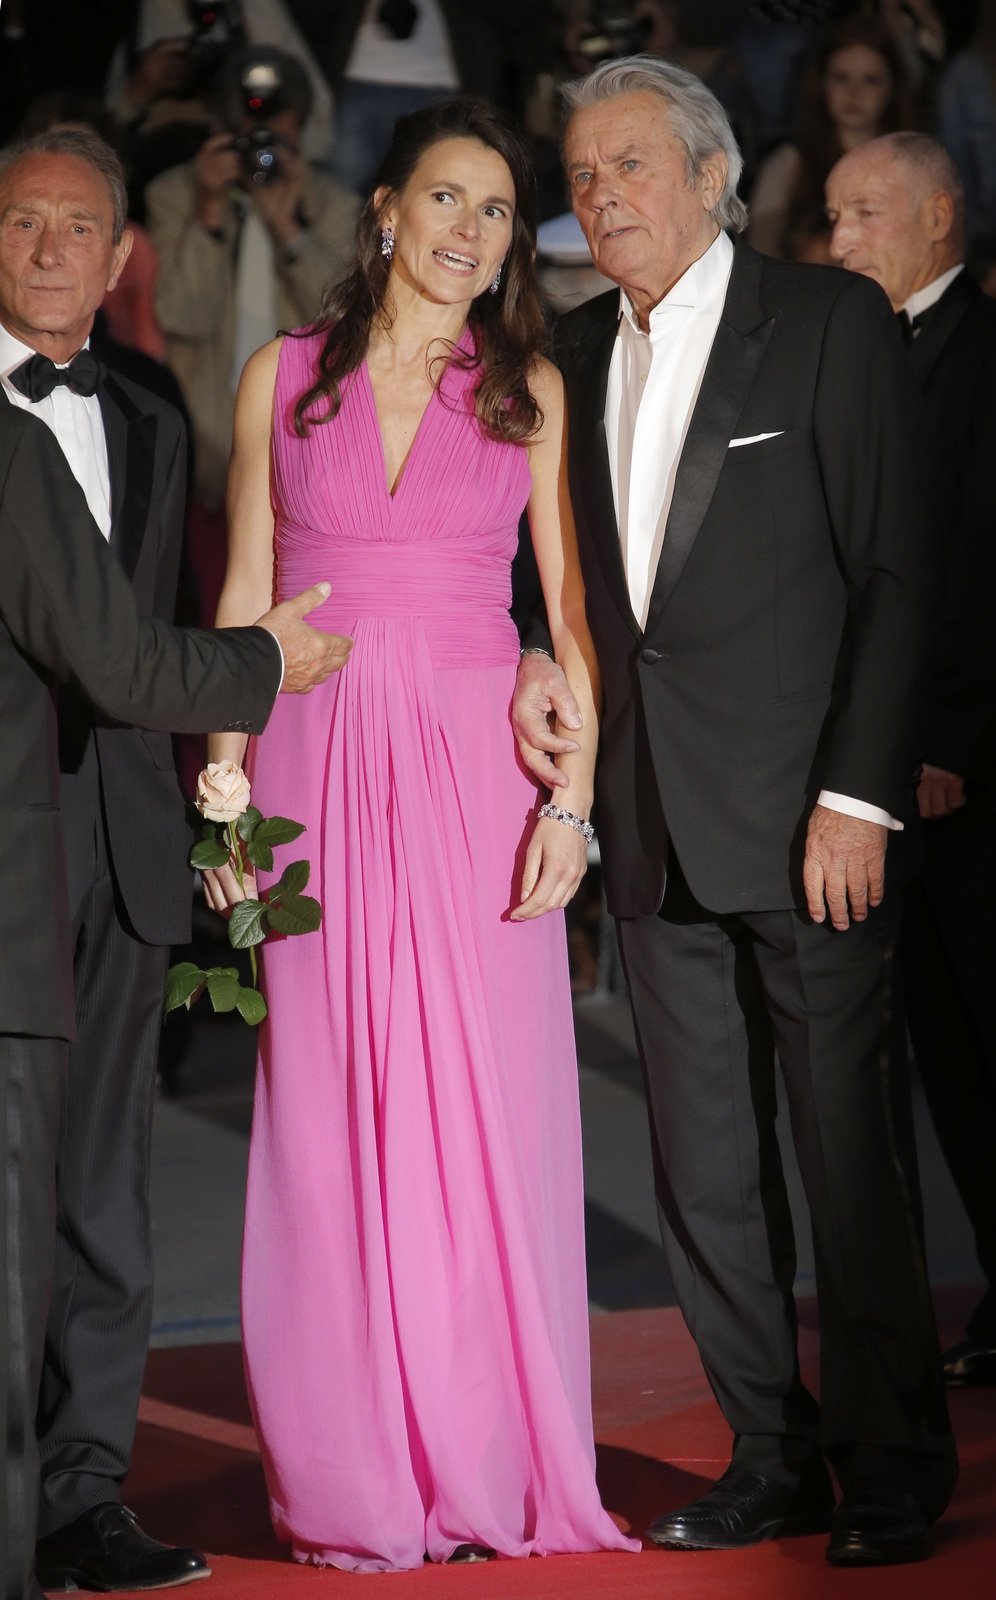 Krásná Aurélie Filippetti a slavný Alain Delon byli ozdobou sobotního večera v Cannes.Alain a Aurélie přišli ruku v ruce.»Merci«, poděkovaní herce publiku.Luciano Lutring